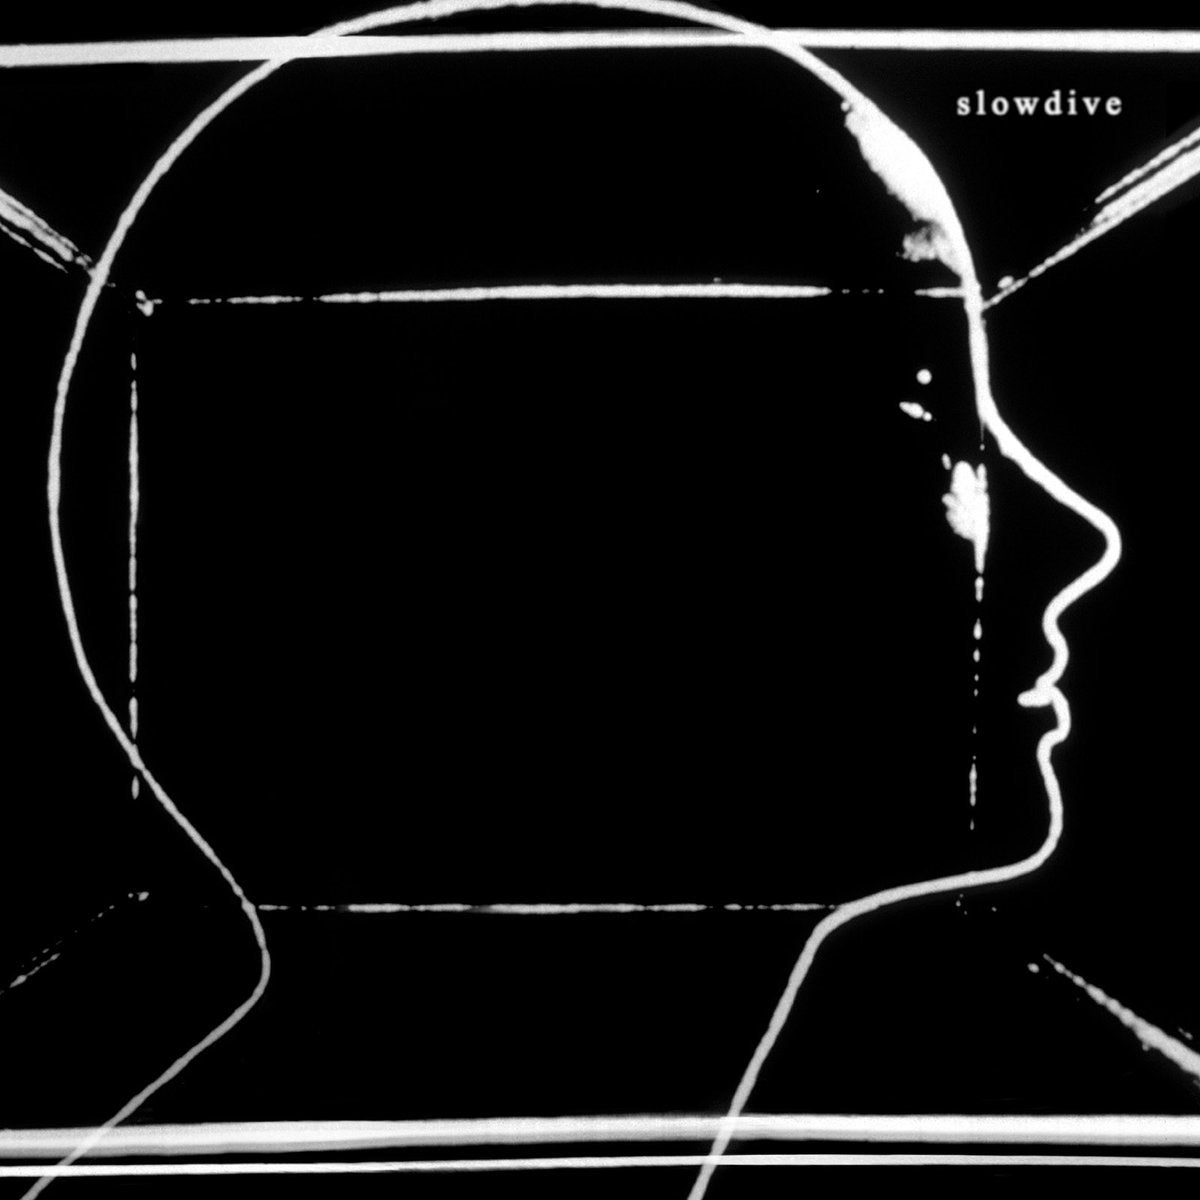 Slowdive - s/t LP - Vinyl - Dead Oceans